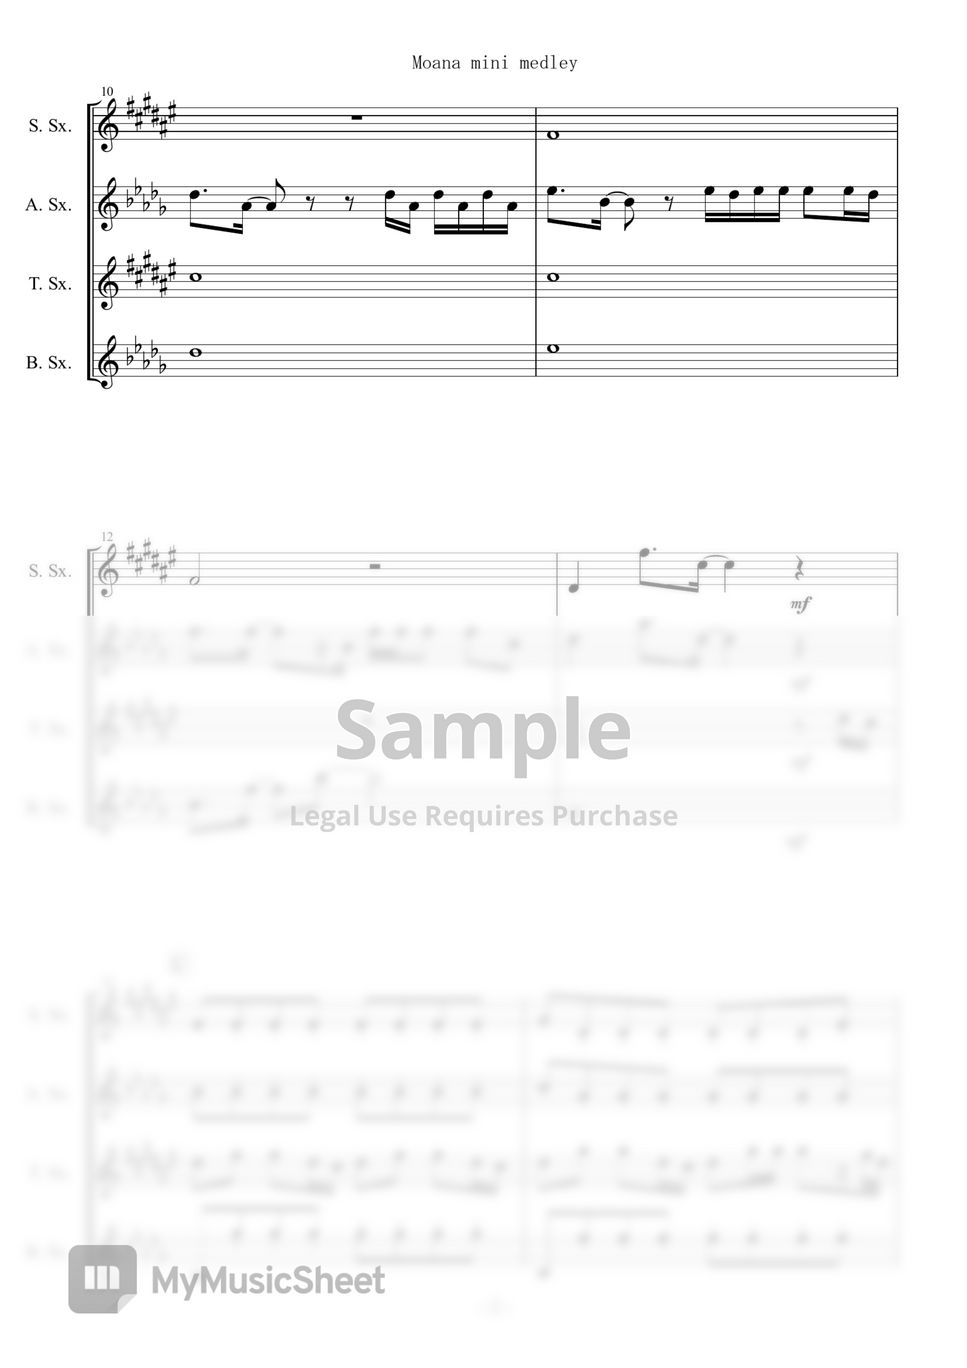 Moana - Mini Medley (Sax Quartet) by muta-sax